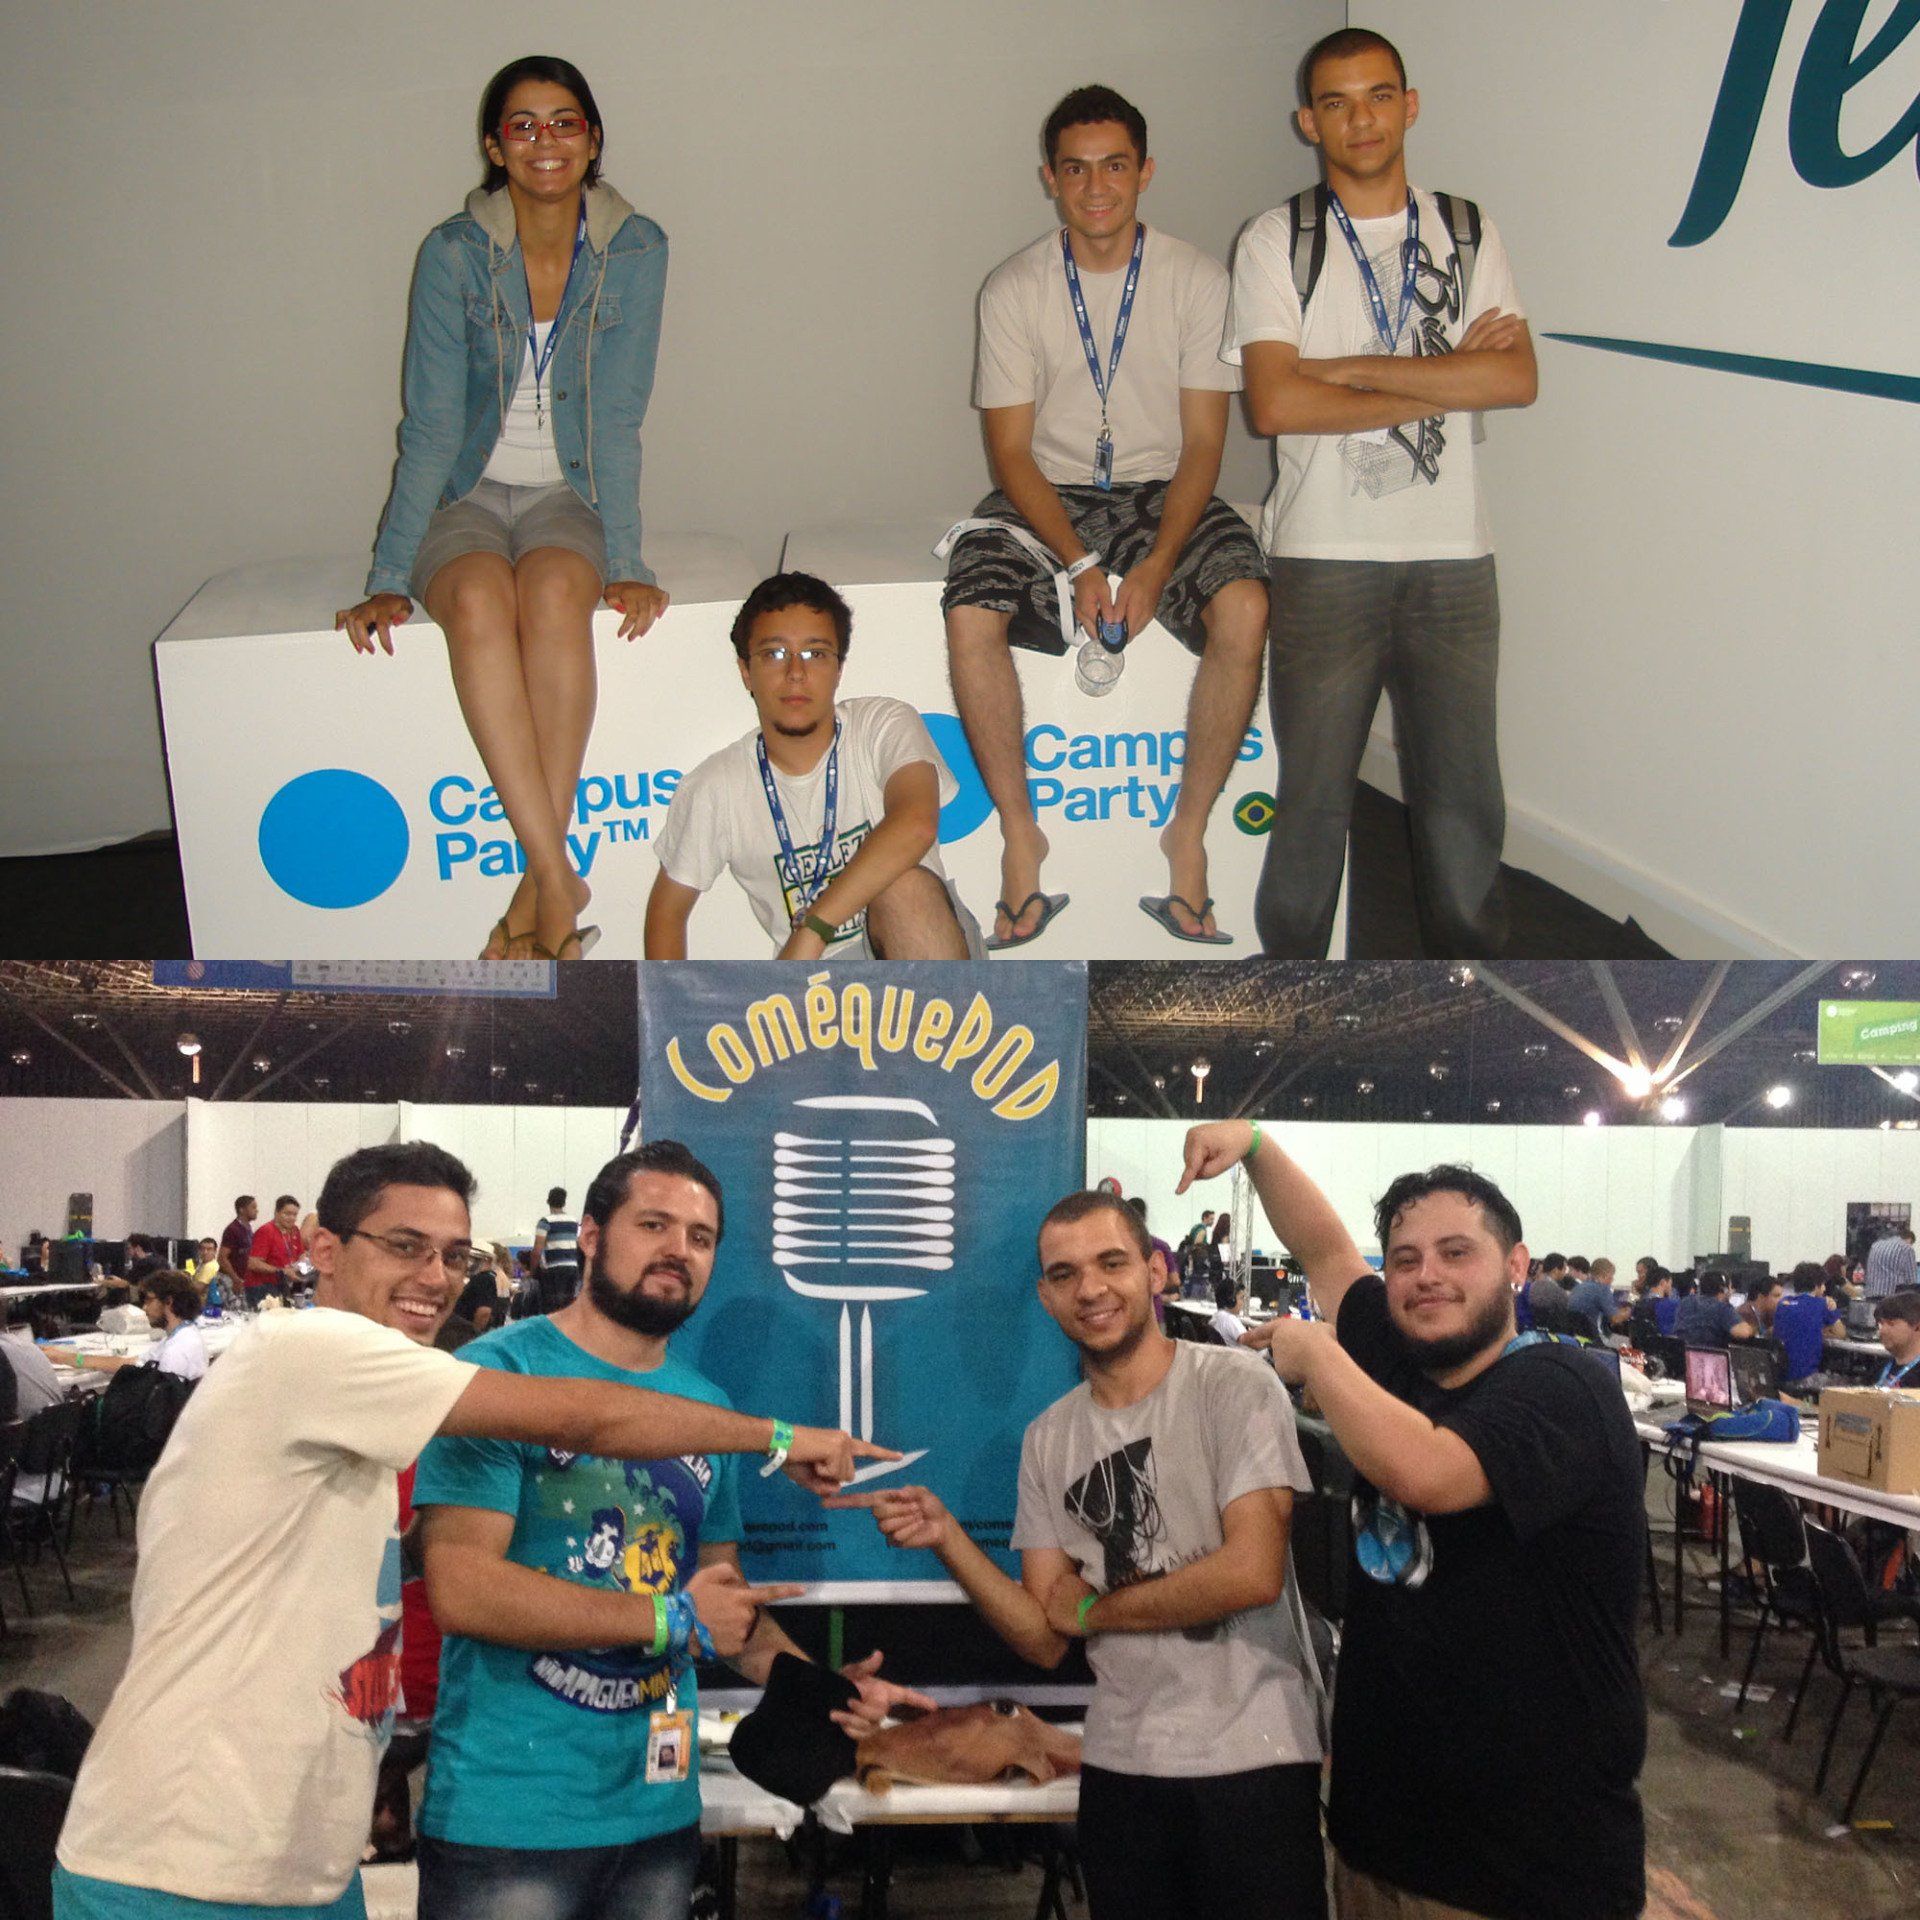 Duas fotos das equipes do ComéquePOD, uma em 2011 e outra em 2014. Cada foto apresenta quatro pessoas na Campus Party.